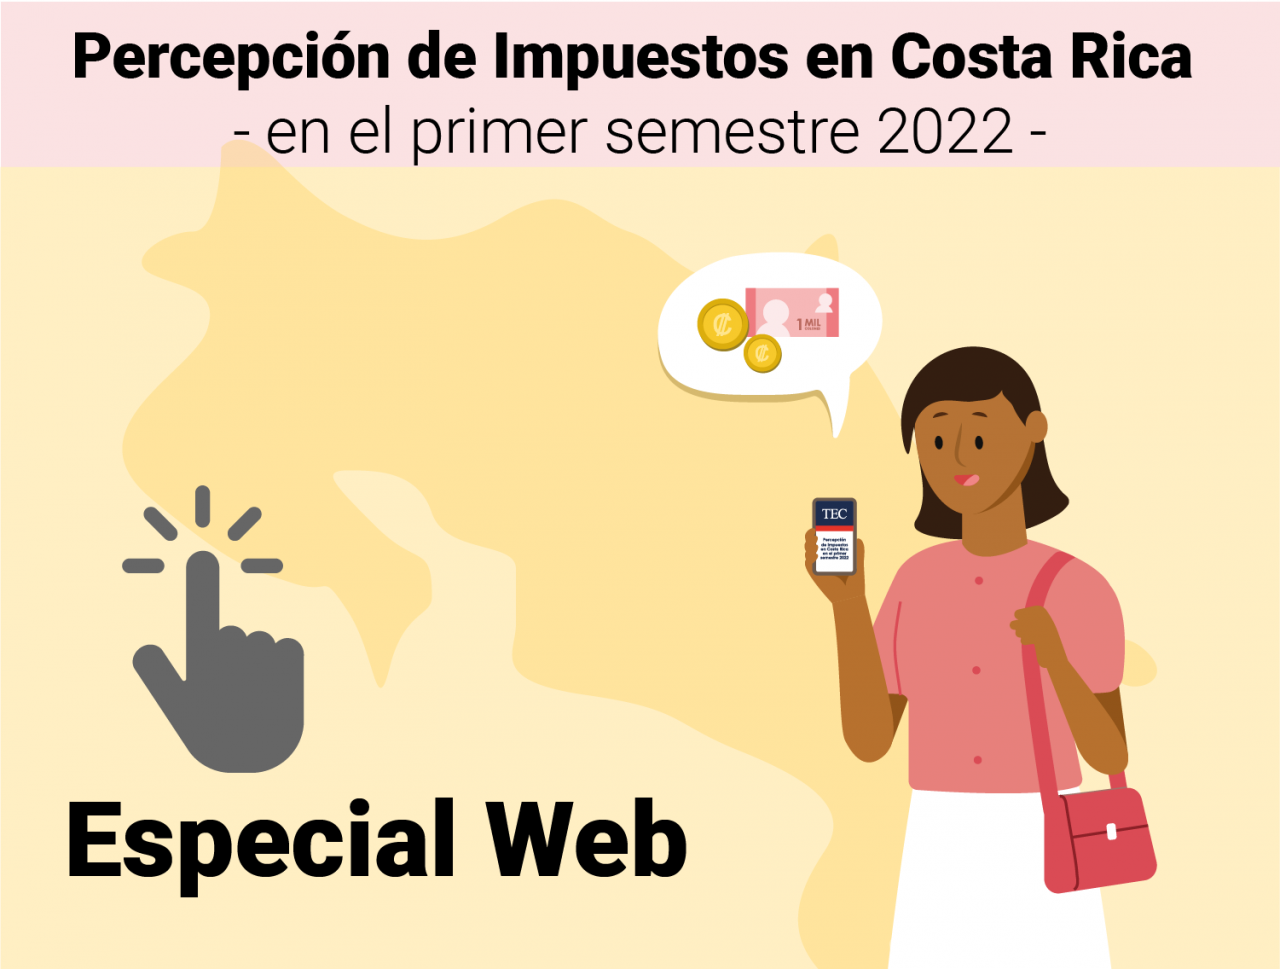 Especial Web estudio percepción de impuestos en Costa Rica